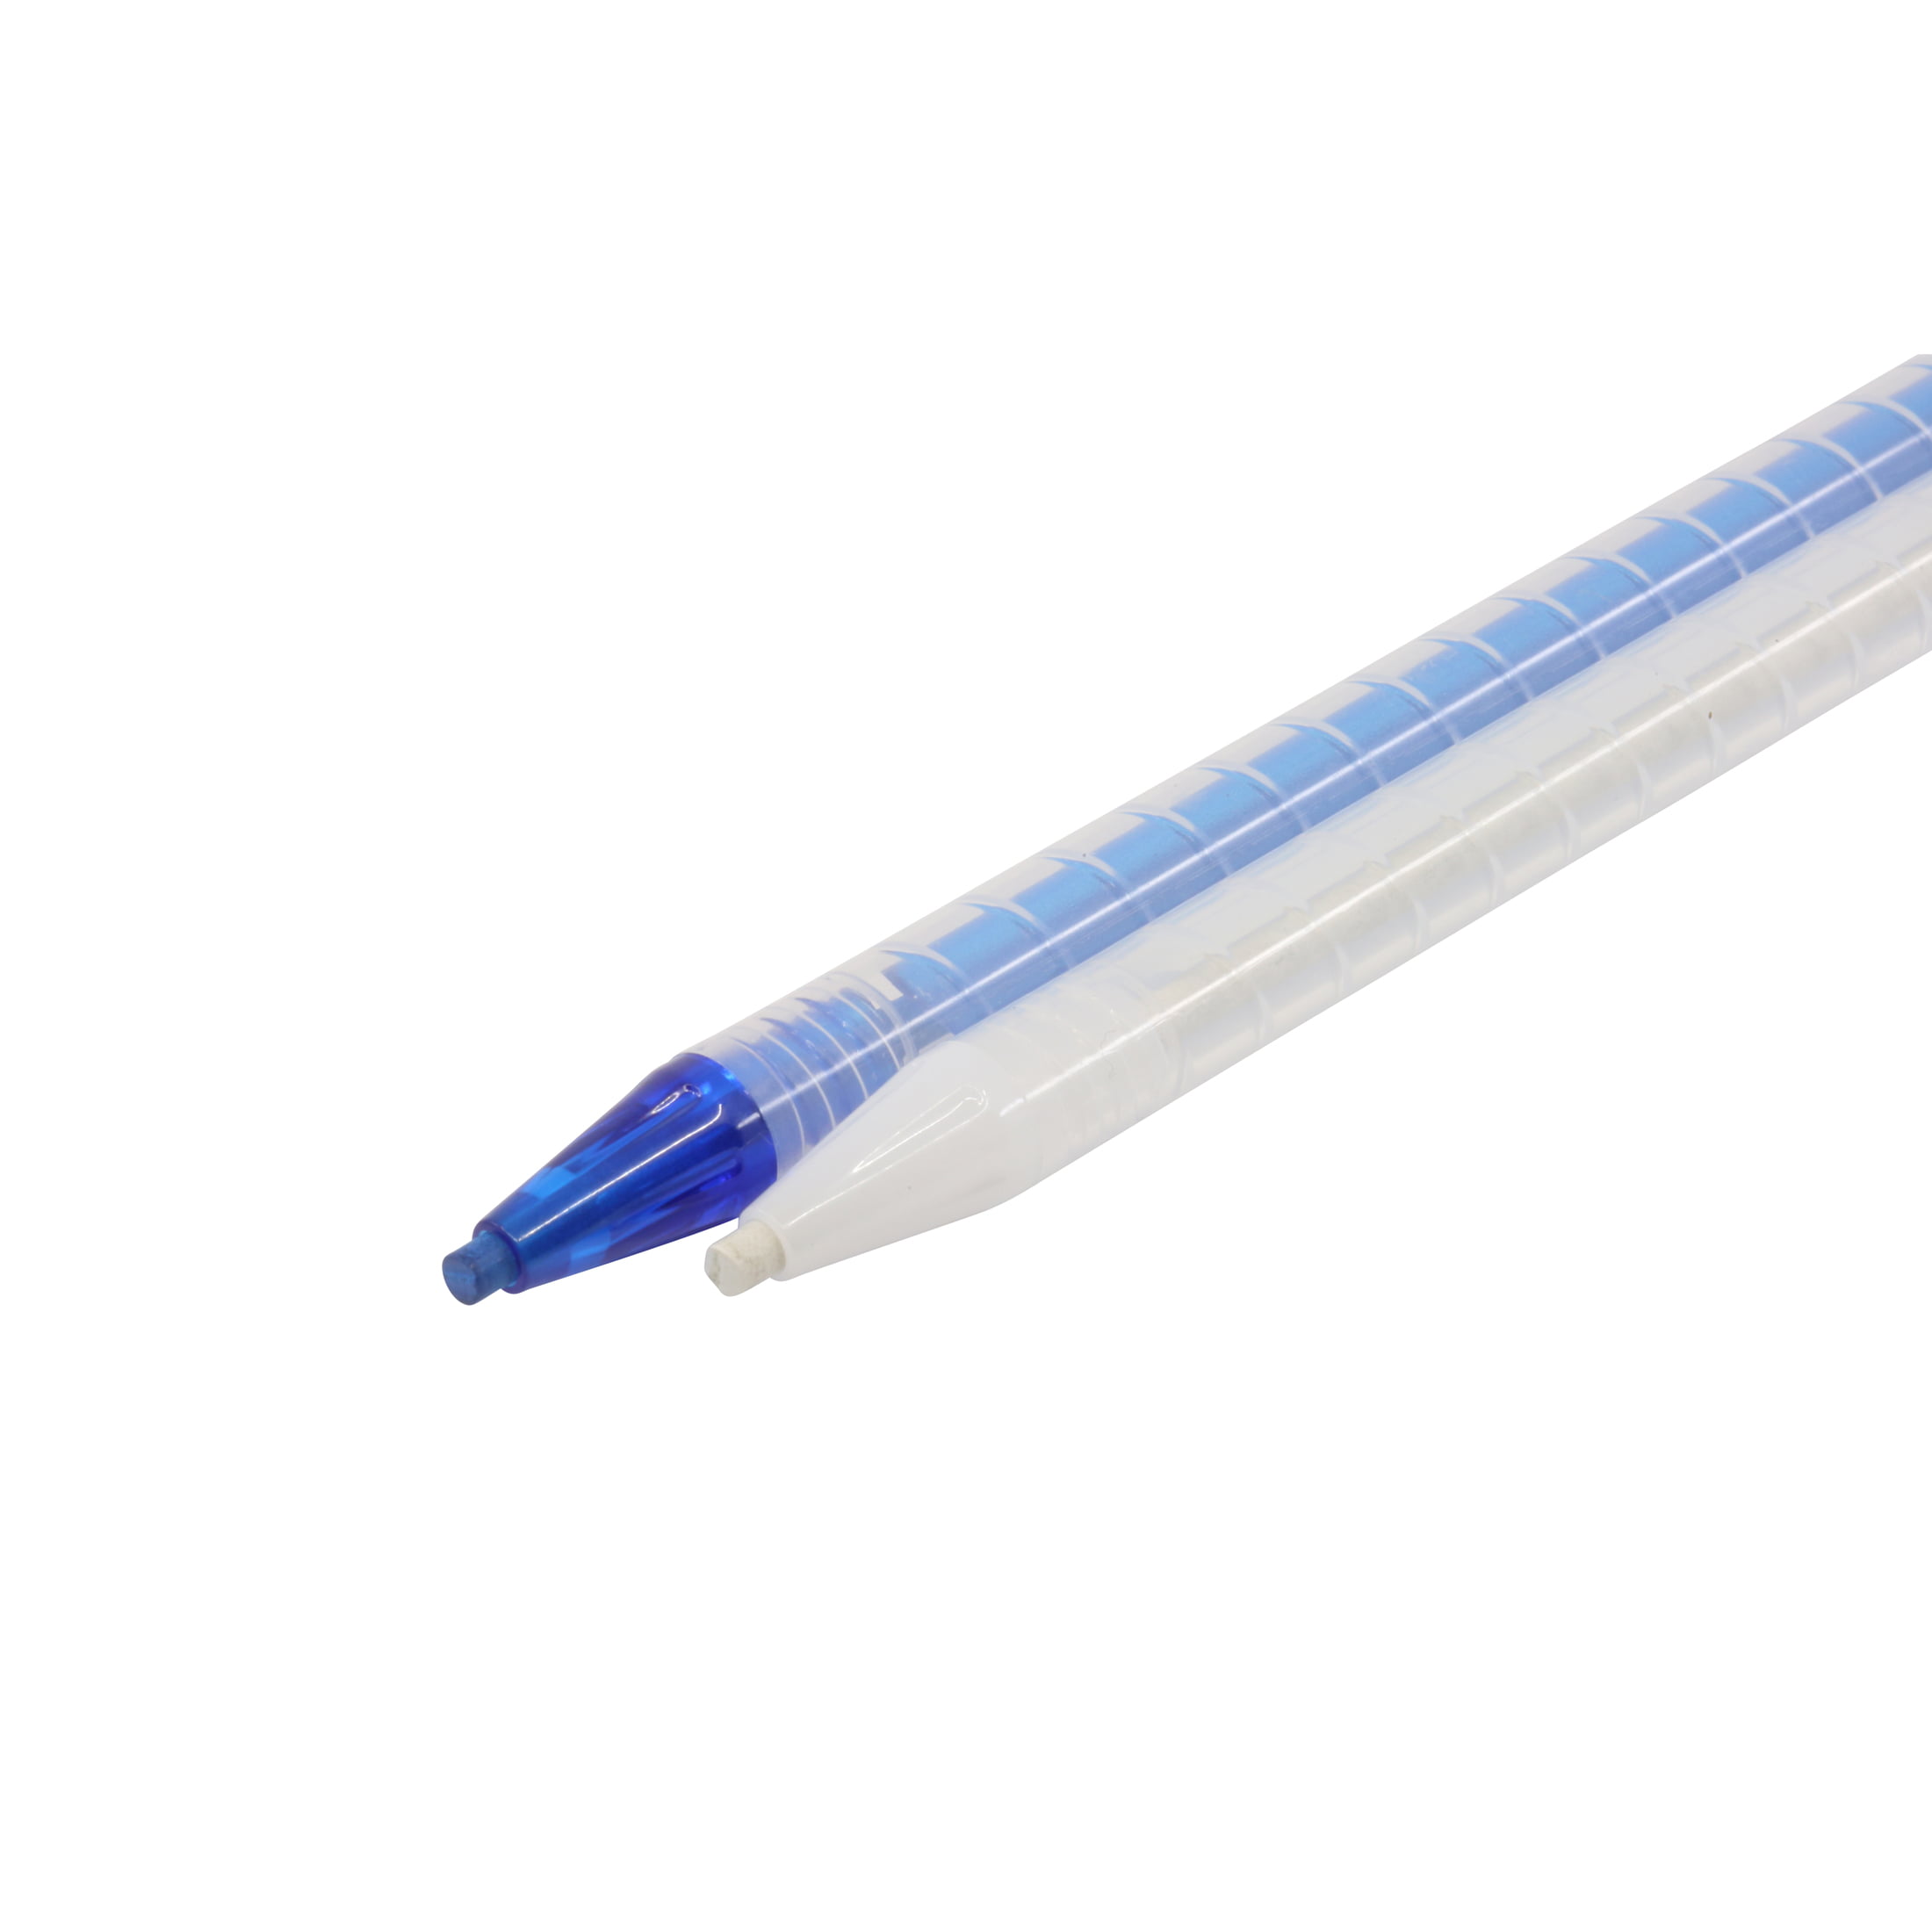 Water Soluble Marking Pen Blue EZ #9201 - 073077300502